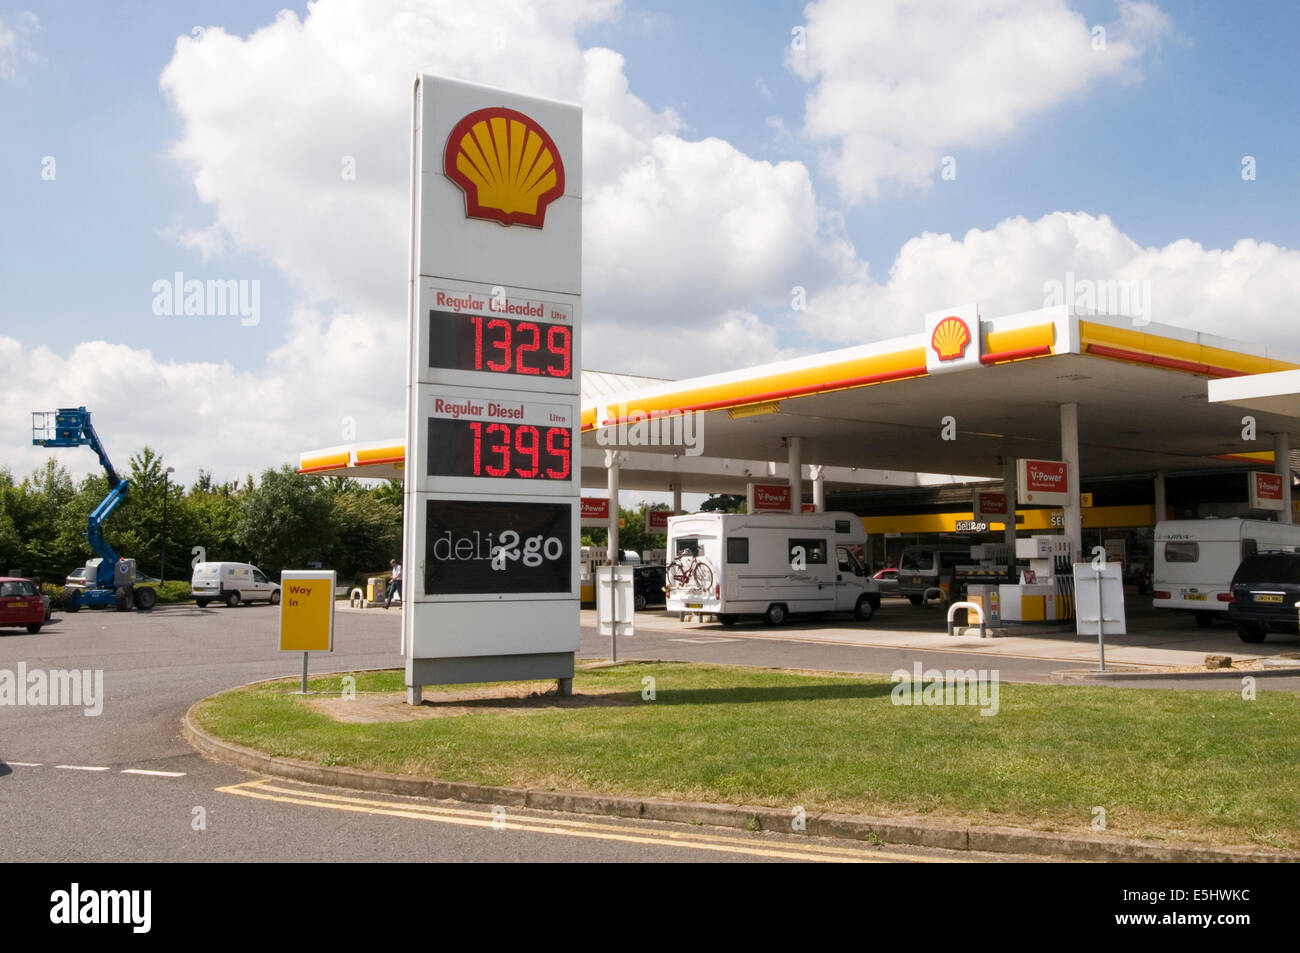 Shell Tankstelle uk Stationen Preis Preise Kraftstoff Diesel teuer Aufgabensteuer Stockfoto